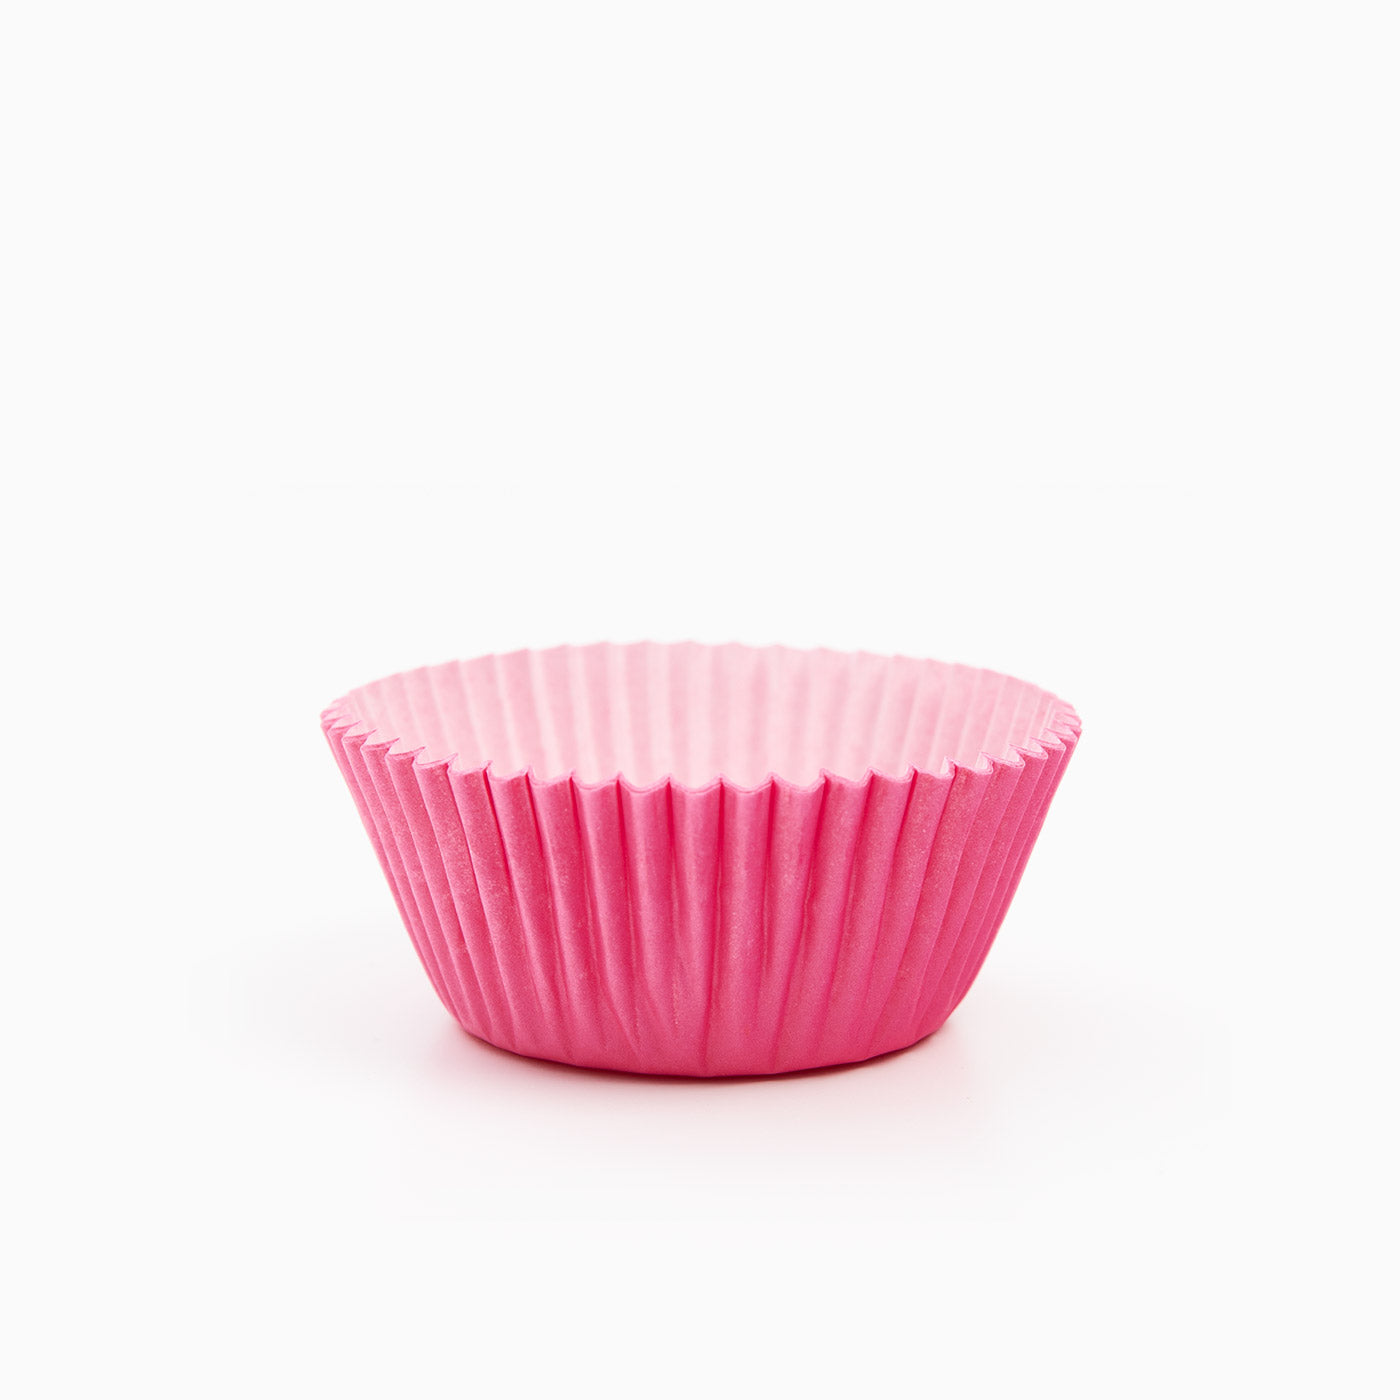 Grande stampo per cupcake rosa